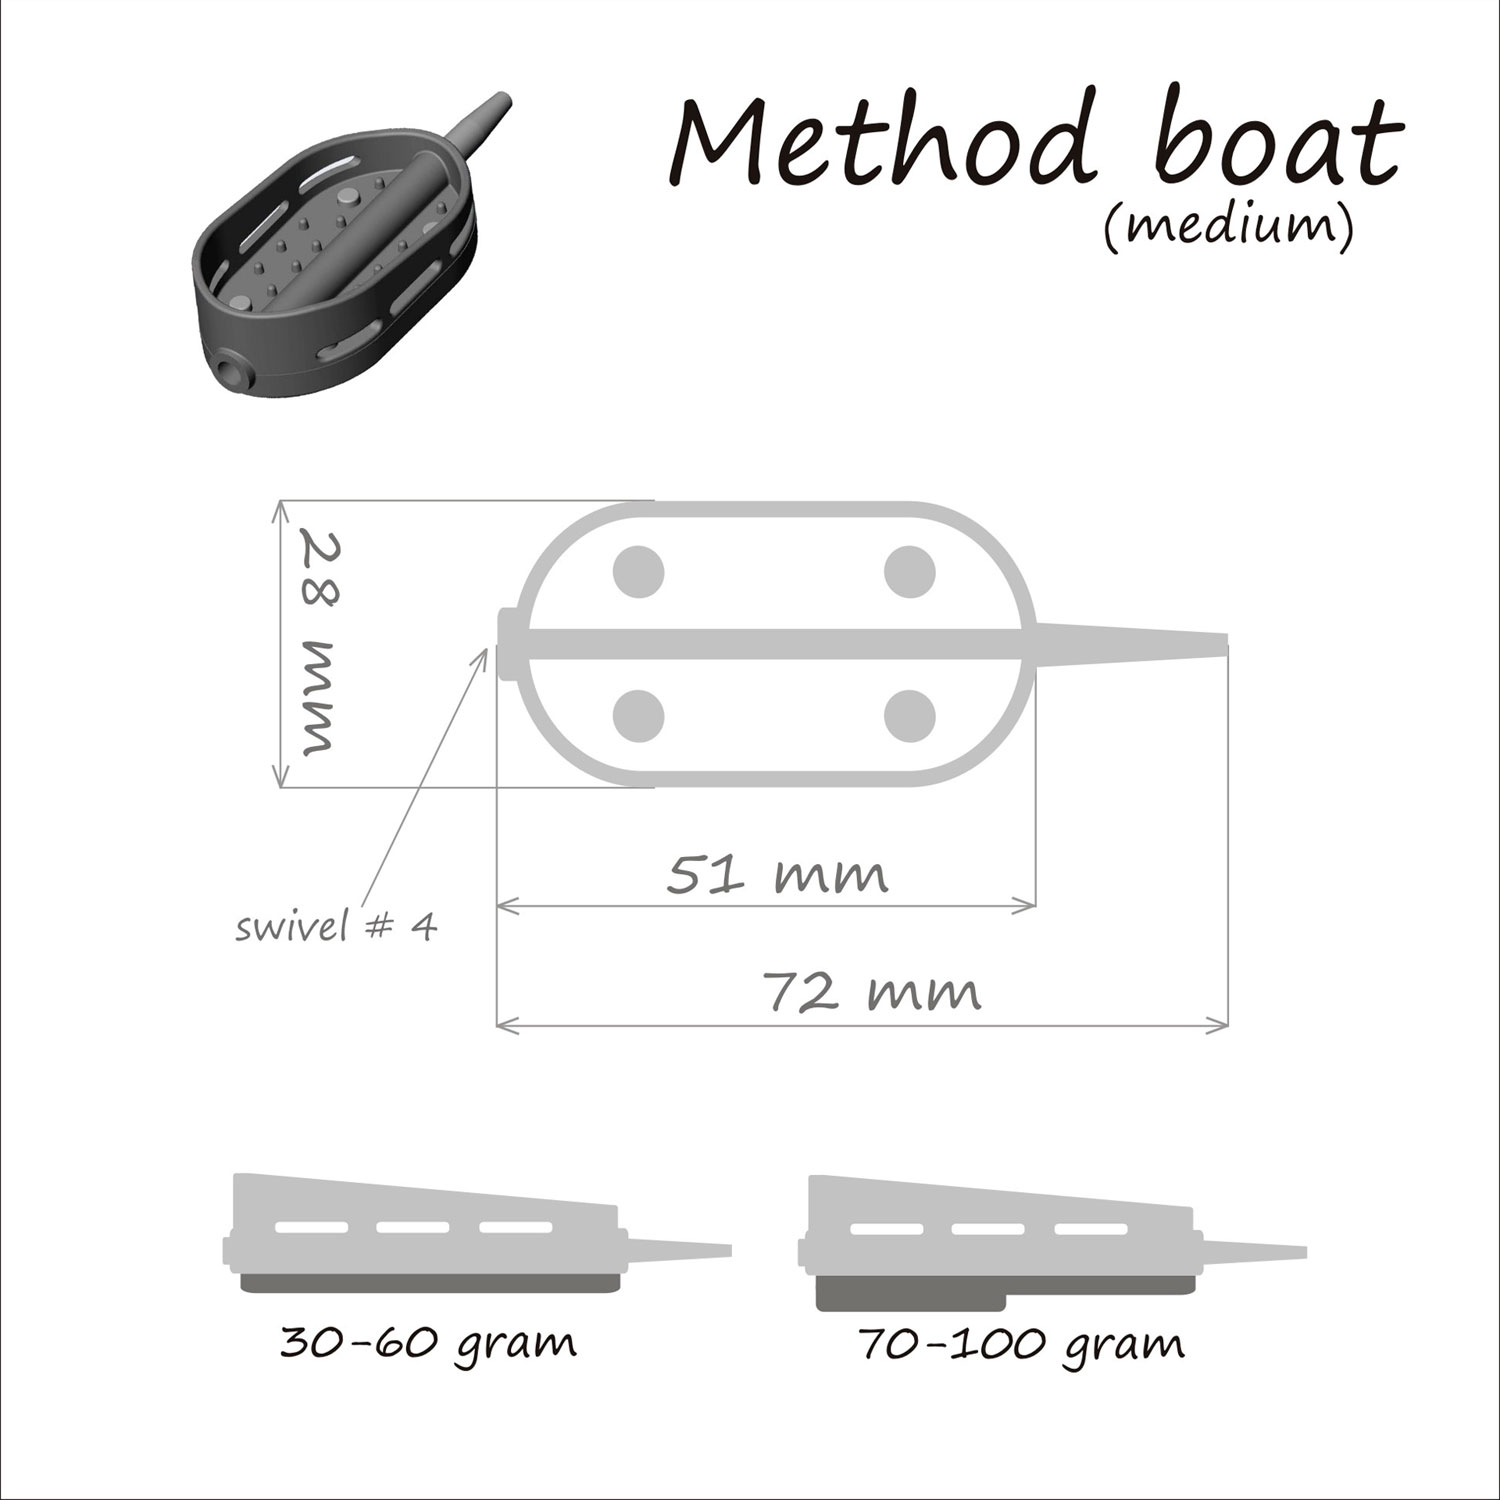 Кормушка ORANGE Boat Flat Method, 40 гр, в тех. уп. 10 шт